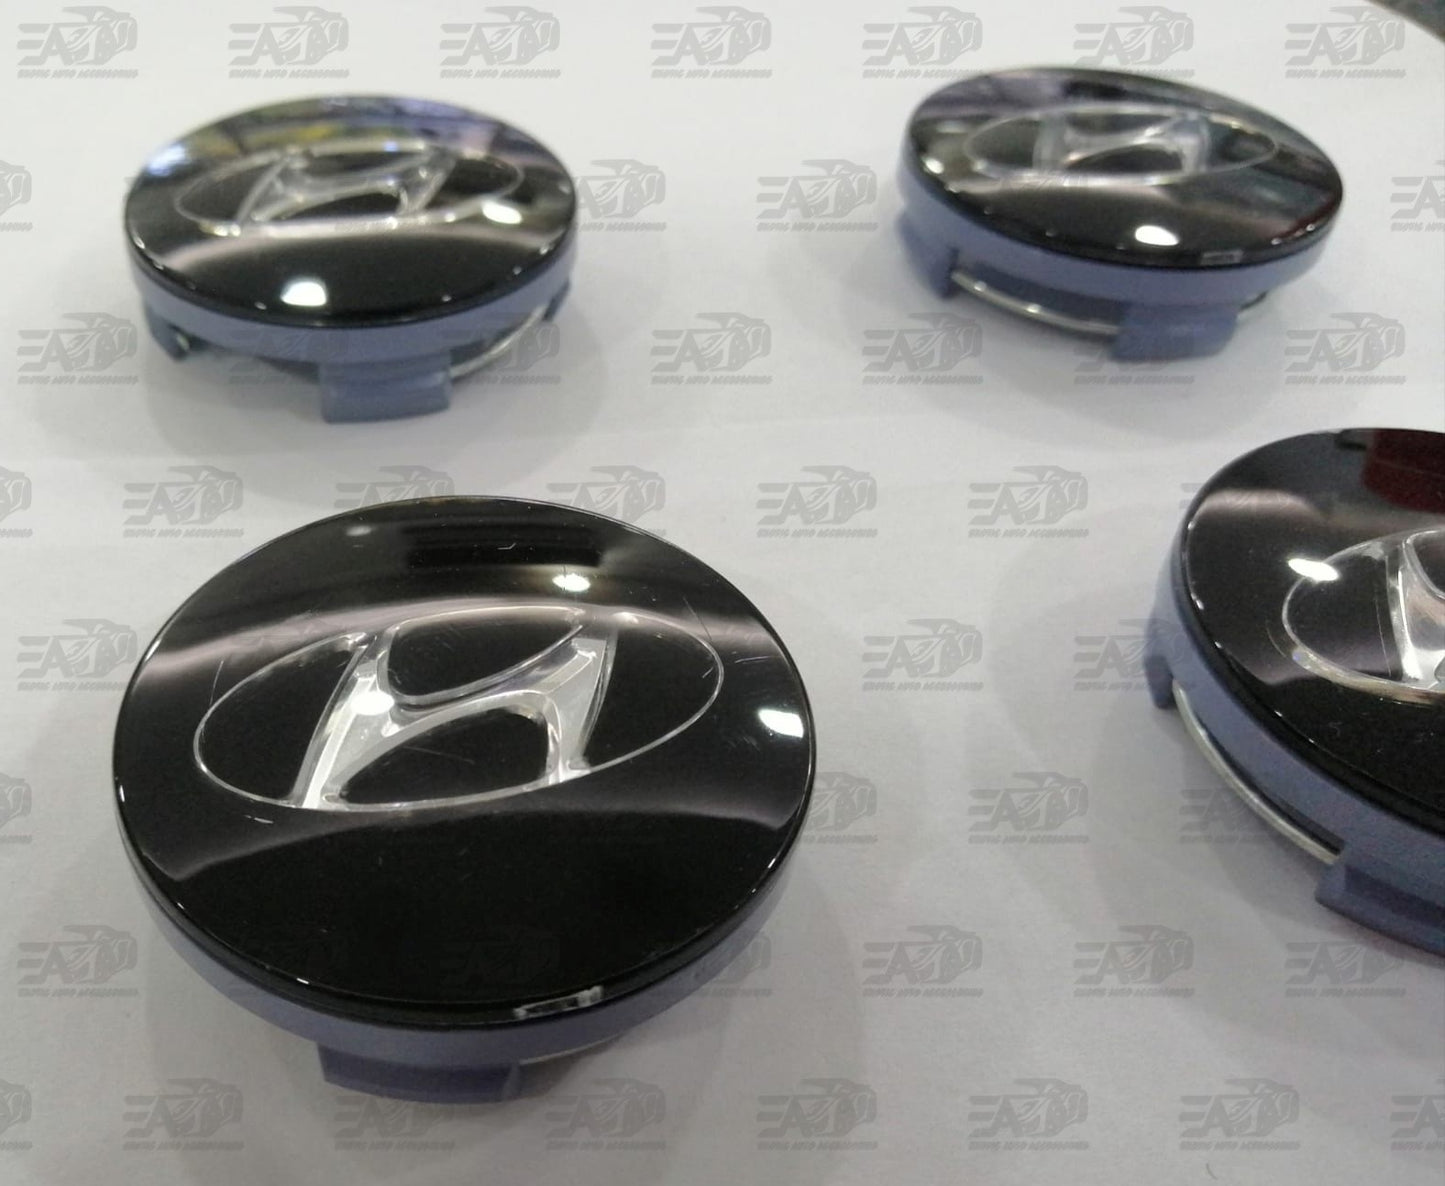 Hyundai gloss black center caps set 60mm